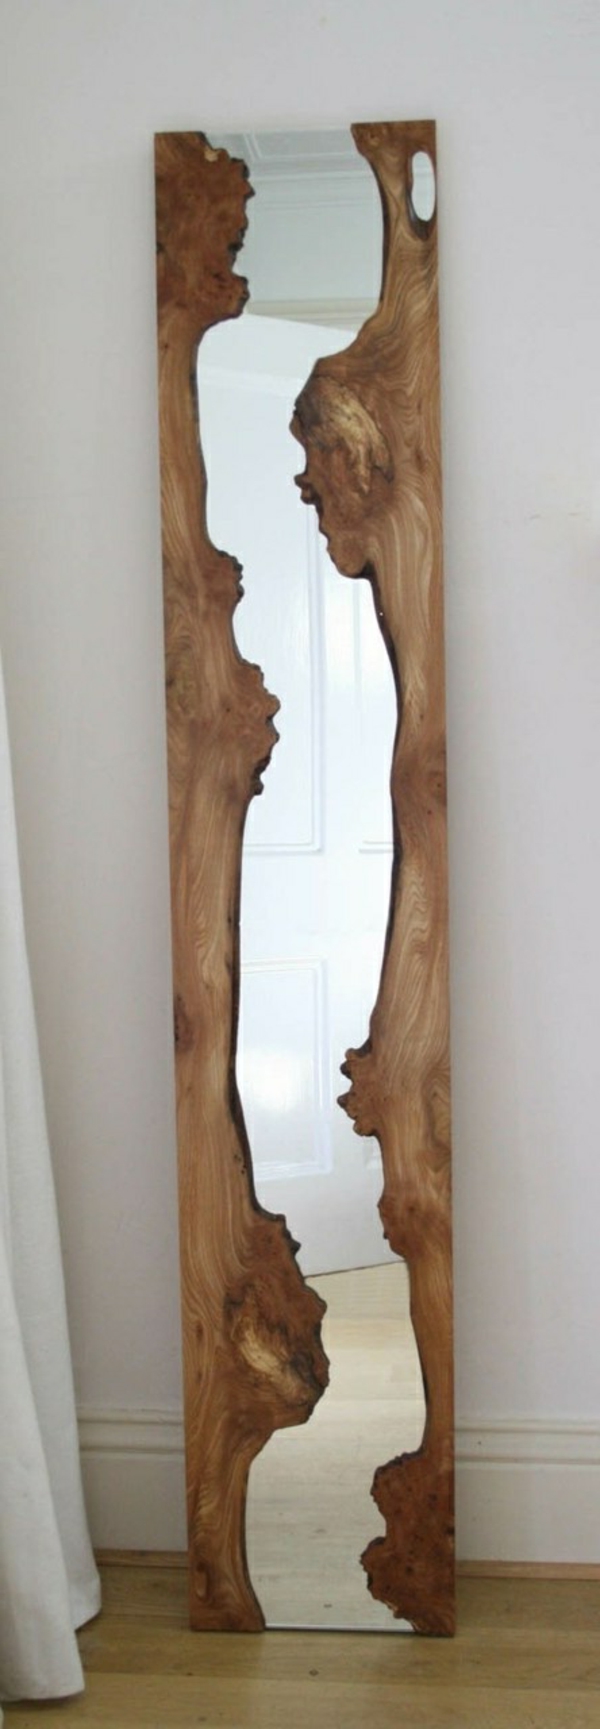 miroir en bois flotté avec un look classique